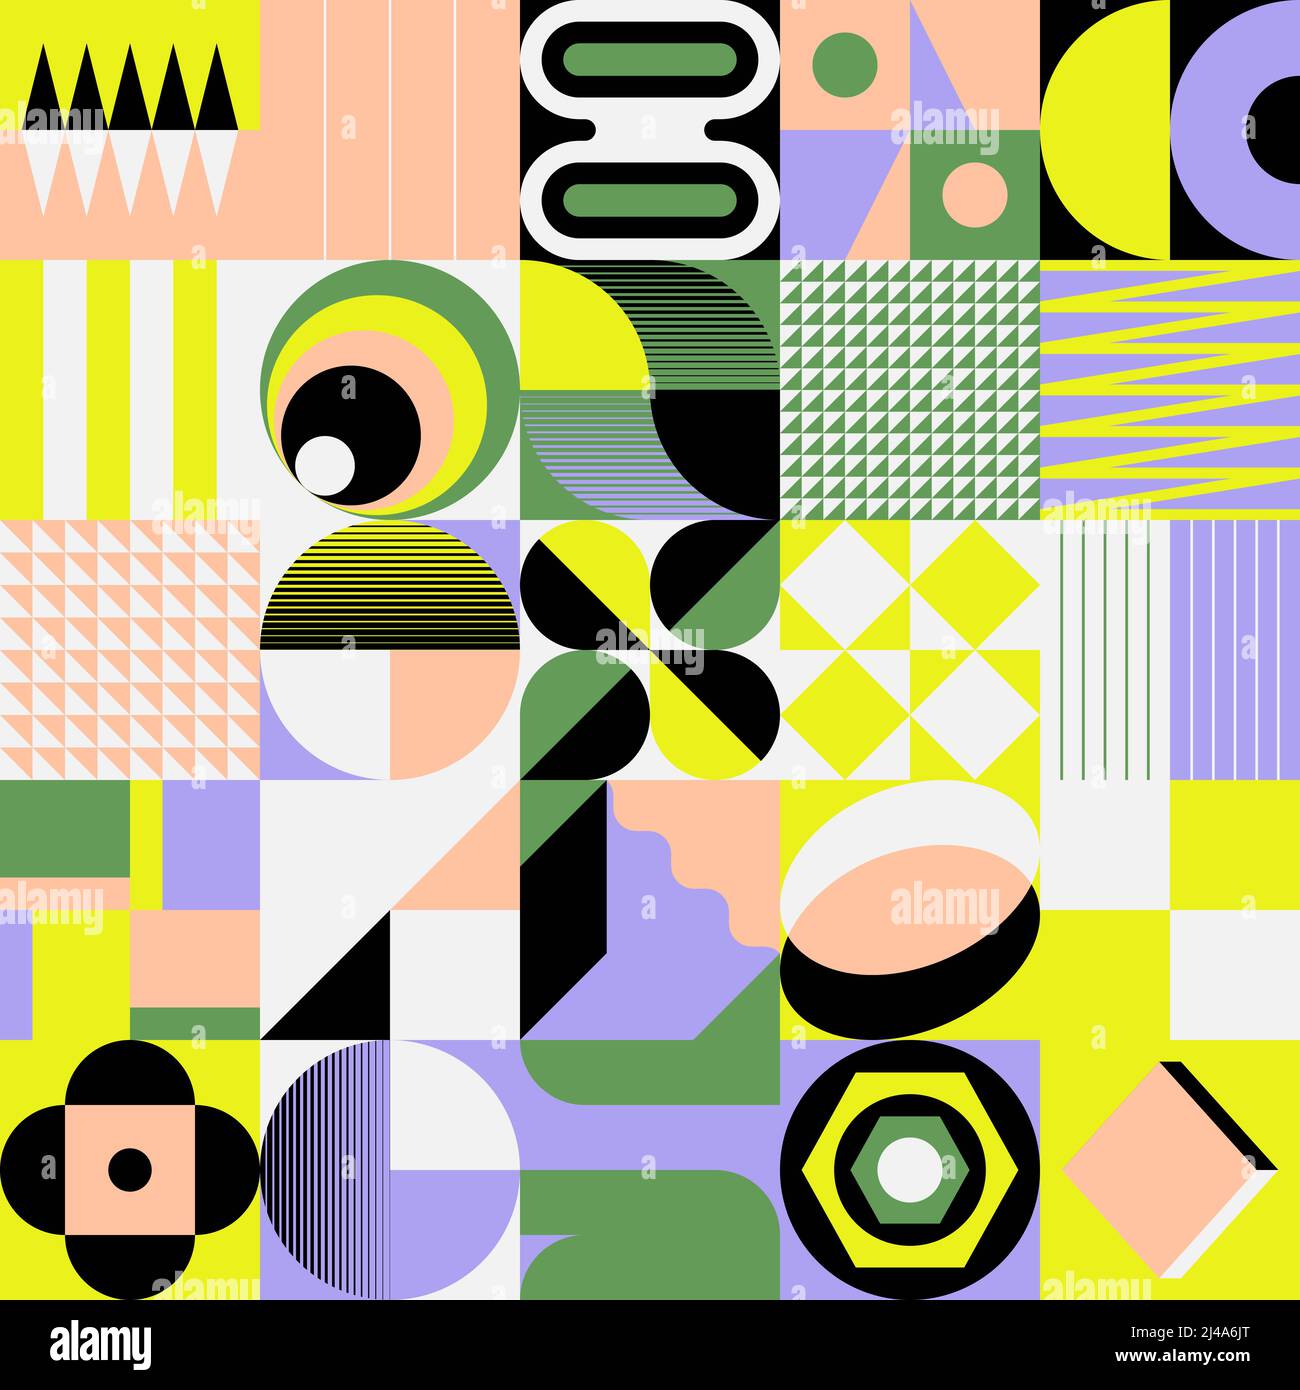 Motif vectoriel abstrait couleur néon composé de formes et d'éléments géométriques variés. Design graphique numérique pour poster, couverture, art, presenta Illustration de Vecteur